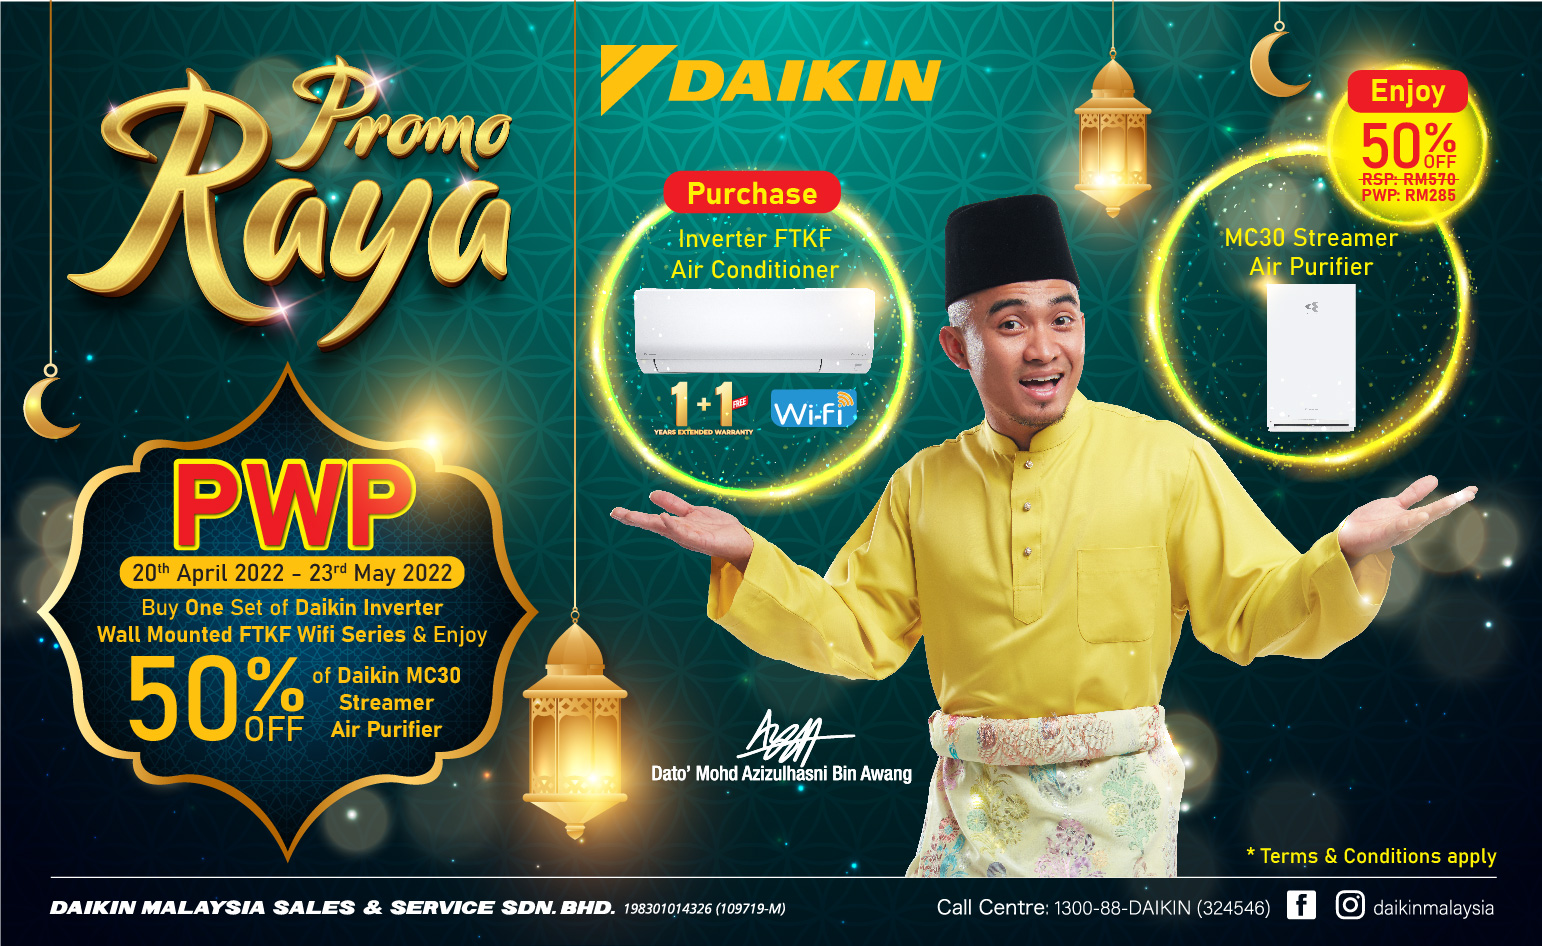 The Daikin Raya Purchase with Purchase Promotion | Daikin Malaysia